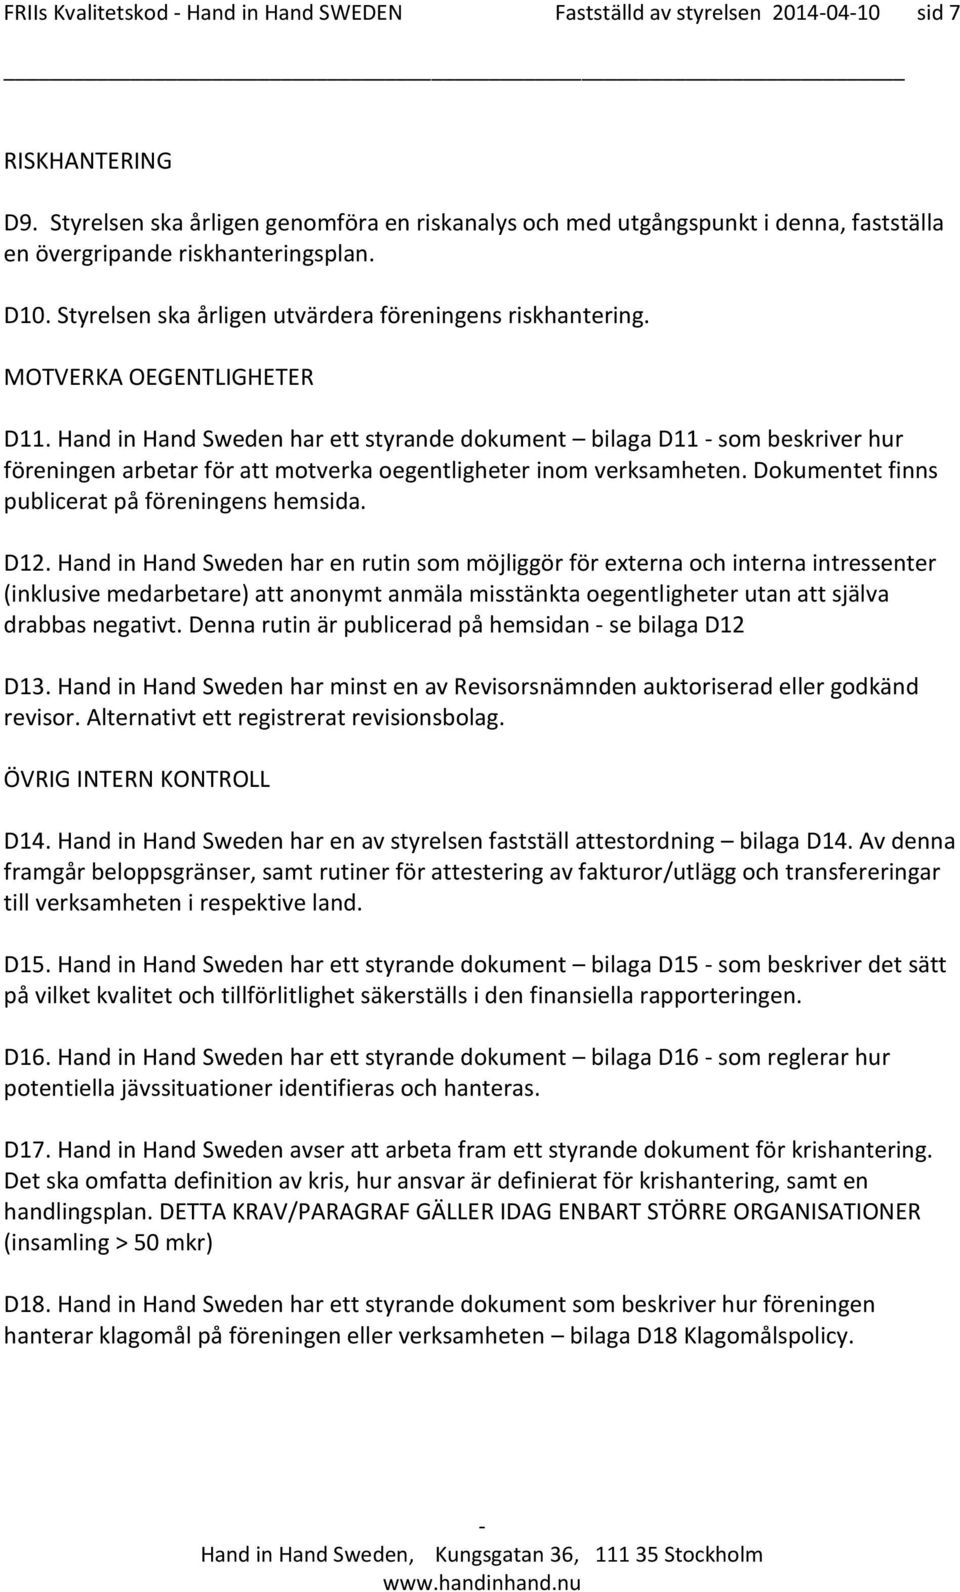 MOTVERKA OEGENTLIGHETER D11. Hand in Hand Sweden har ett styrande dokument bilaga D11 som beskriver hur föreningen arbetar för att motverka oegentligheter inom verksamheten.